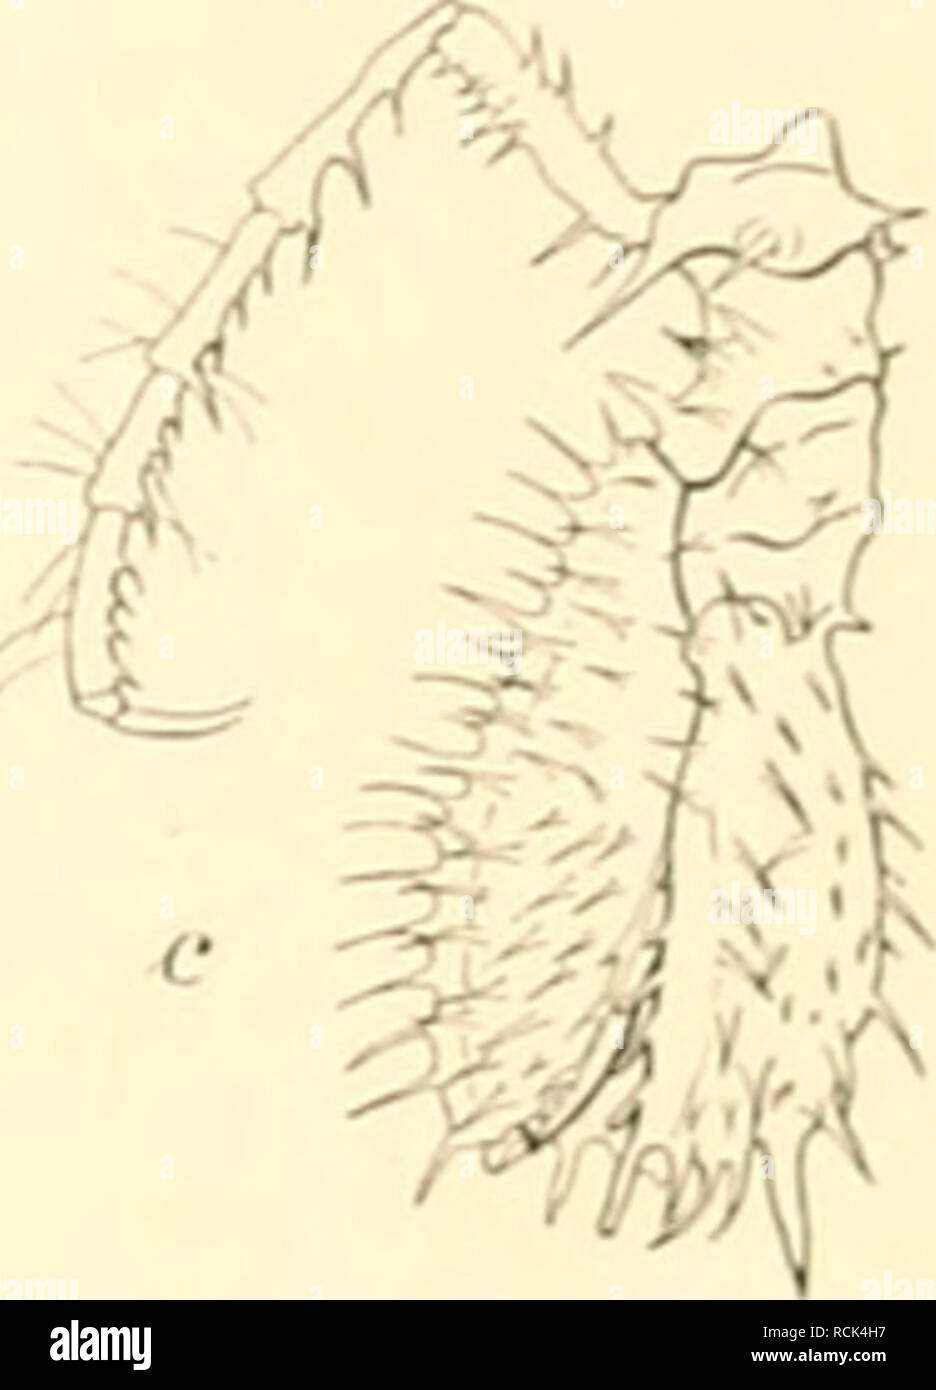 . Die Isopoden der Deutschen Sdpolar-Expedition, 1901-1903. Isopoda z Antarctic regions. liier klein, nur ungefÃ¤hr halb so groÃ wie bei A. glacialis erscheinen, zwei ganz kleine Stacheln und dahinter noch vier Stacheln in einer Querreihe am Kopf auf. Die hintere Partie des Kopfes von A. glacialis ist reicher bedornt. Die Bedornung der Ruinpfsegniente ist Ã¤hnlich wie bei A. glacialis, nur sind bei A. gaussensis die RÃ¼ckendornen kleiner und spÃ¤rlicher und die Seitendornen verhÃ¤ltnismÃ¤Ãig lÃ¤nger, so daÃ der Unterschied in der Bedornung von KÃ¼cken und Seiten schÃ¤rfer hervortritt. Dasselbe Stock Photo